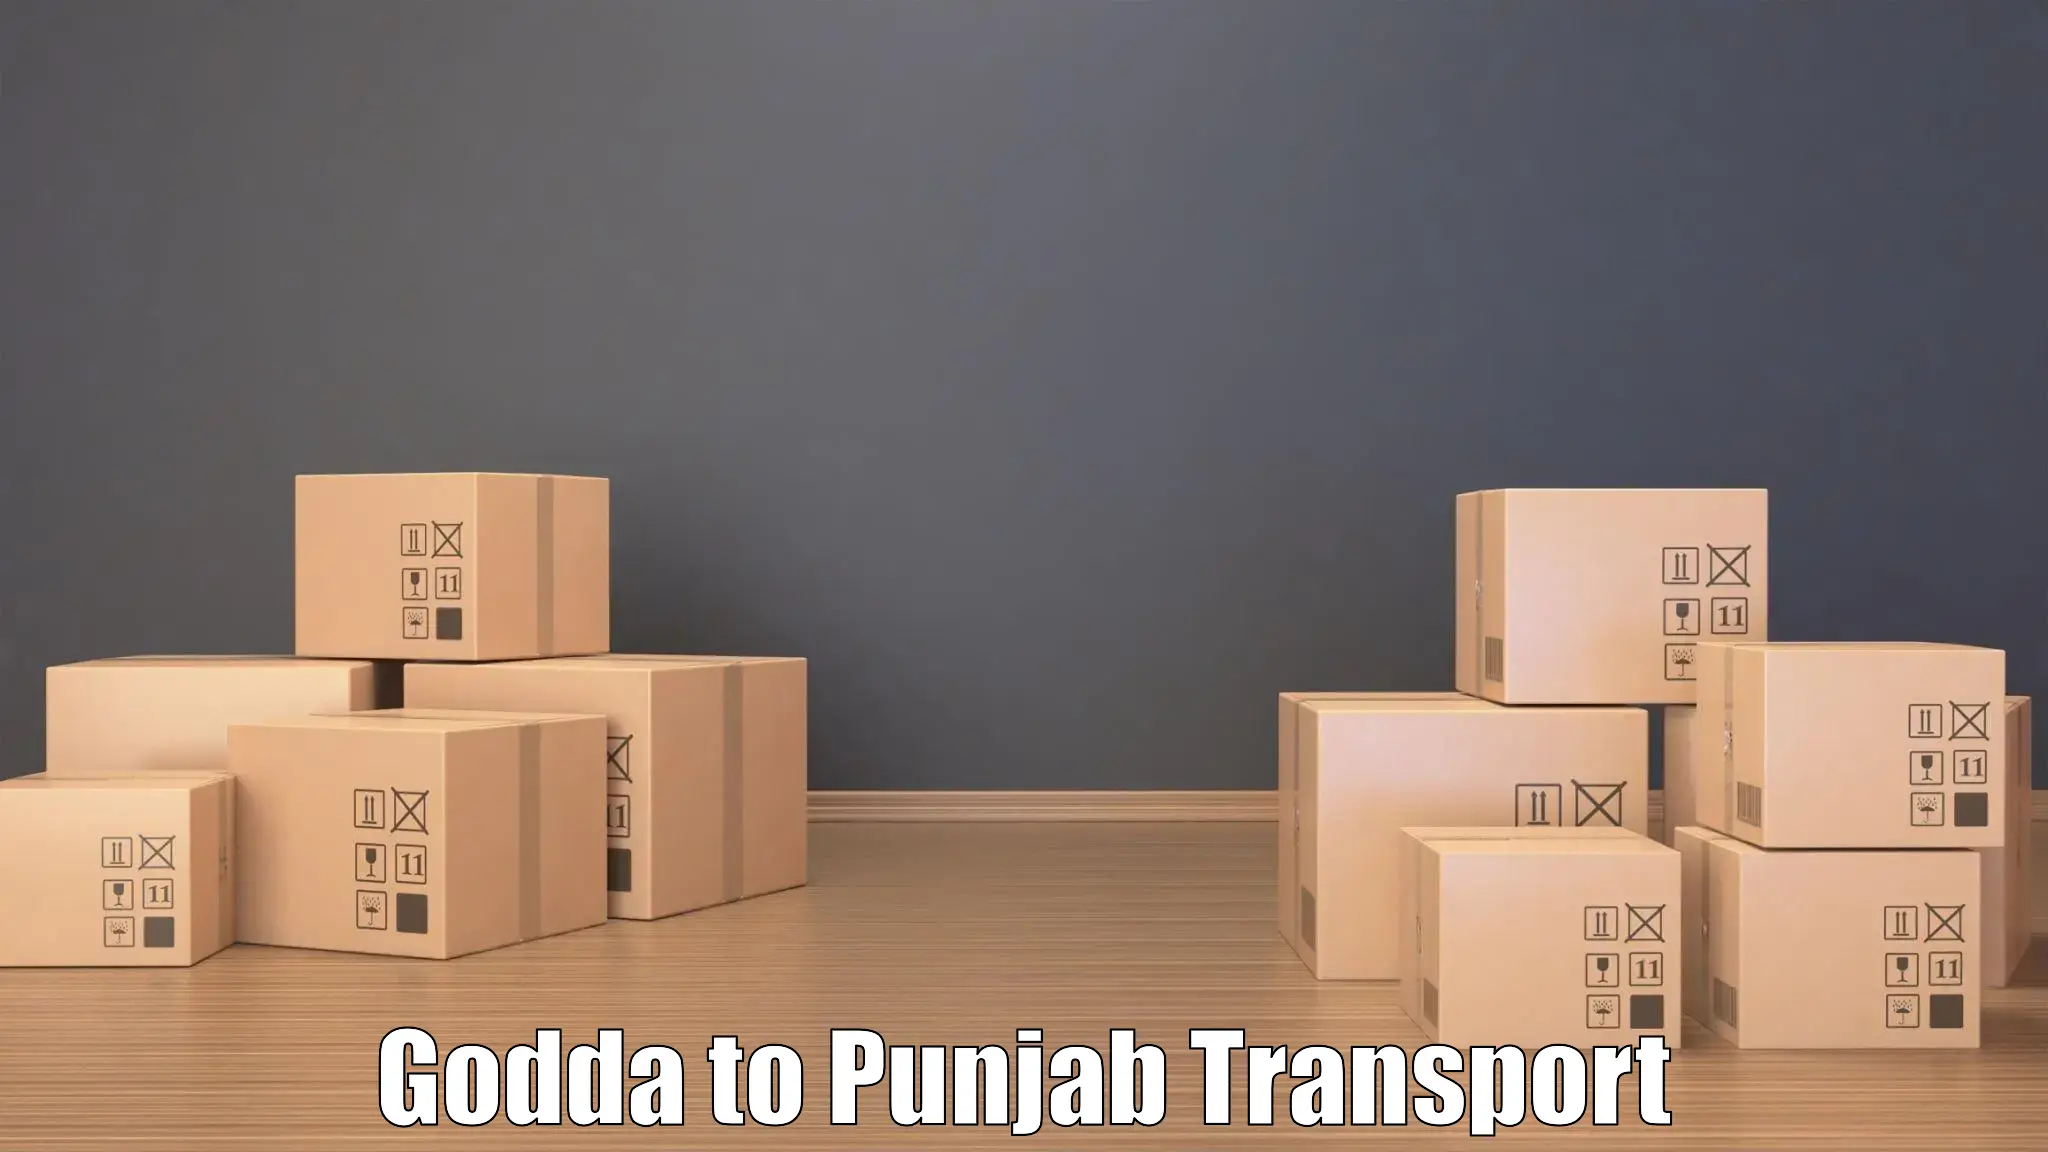 Commercial transport service Godda to Jalandhar